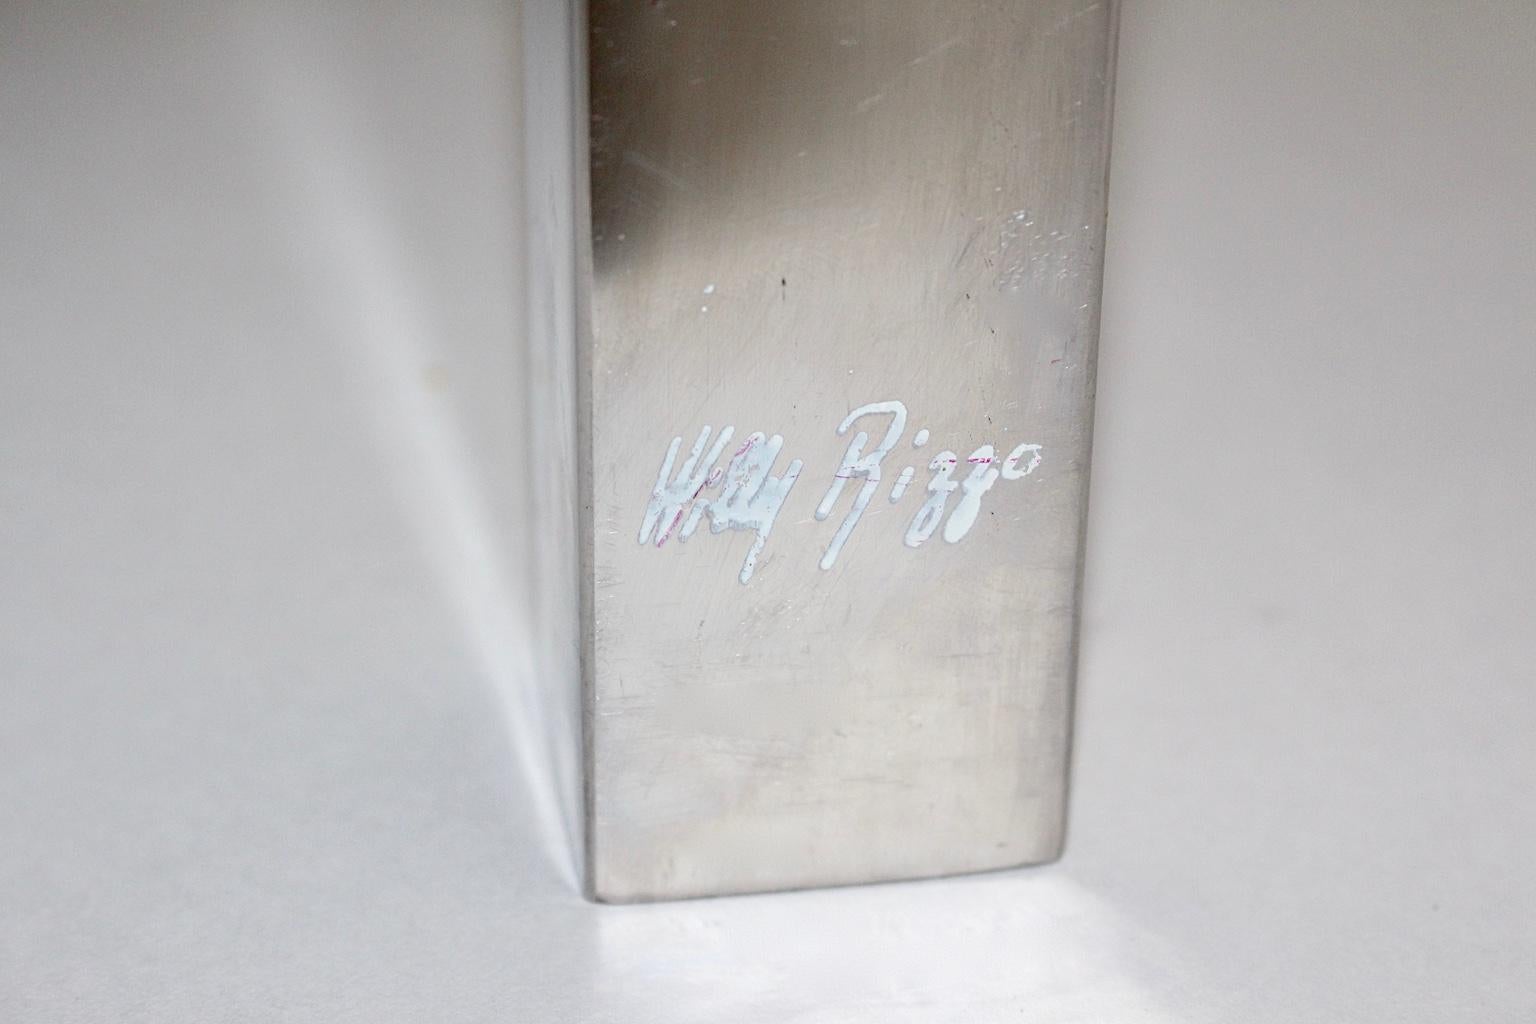 Cette table basse vintage signée Willy Rizzo a été fabriquée en laiton et en métal chromé et apparaît comme une beauté élégante.
Willy Rizzo (1928-2013) était un photographe et un designer, qui a travaillé avec les artistes les plus importants de